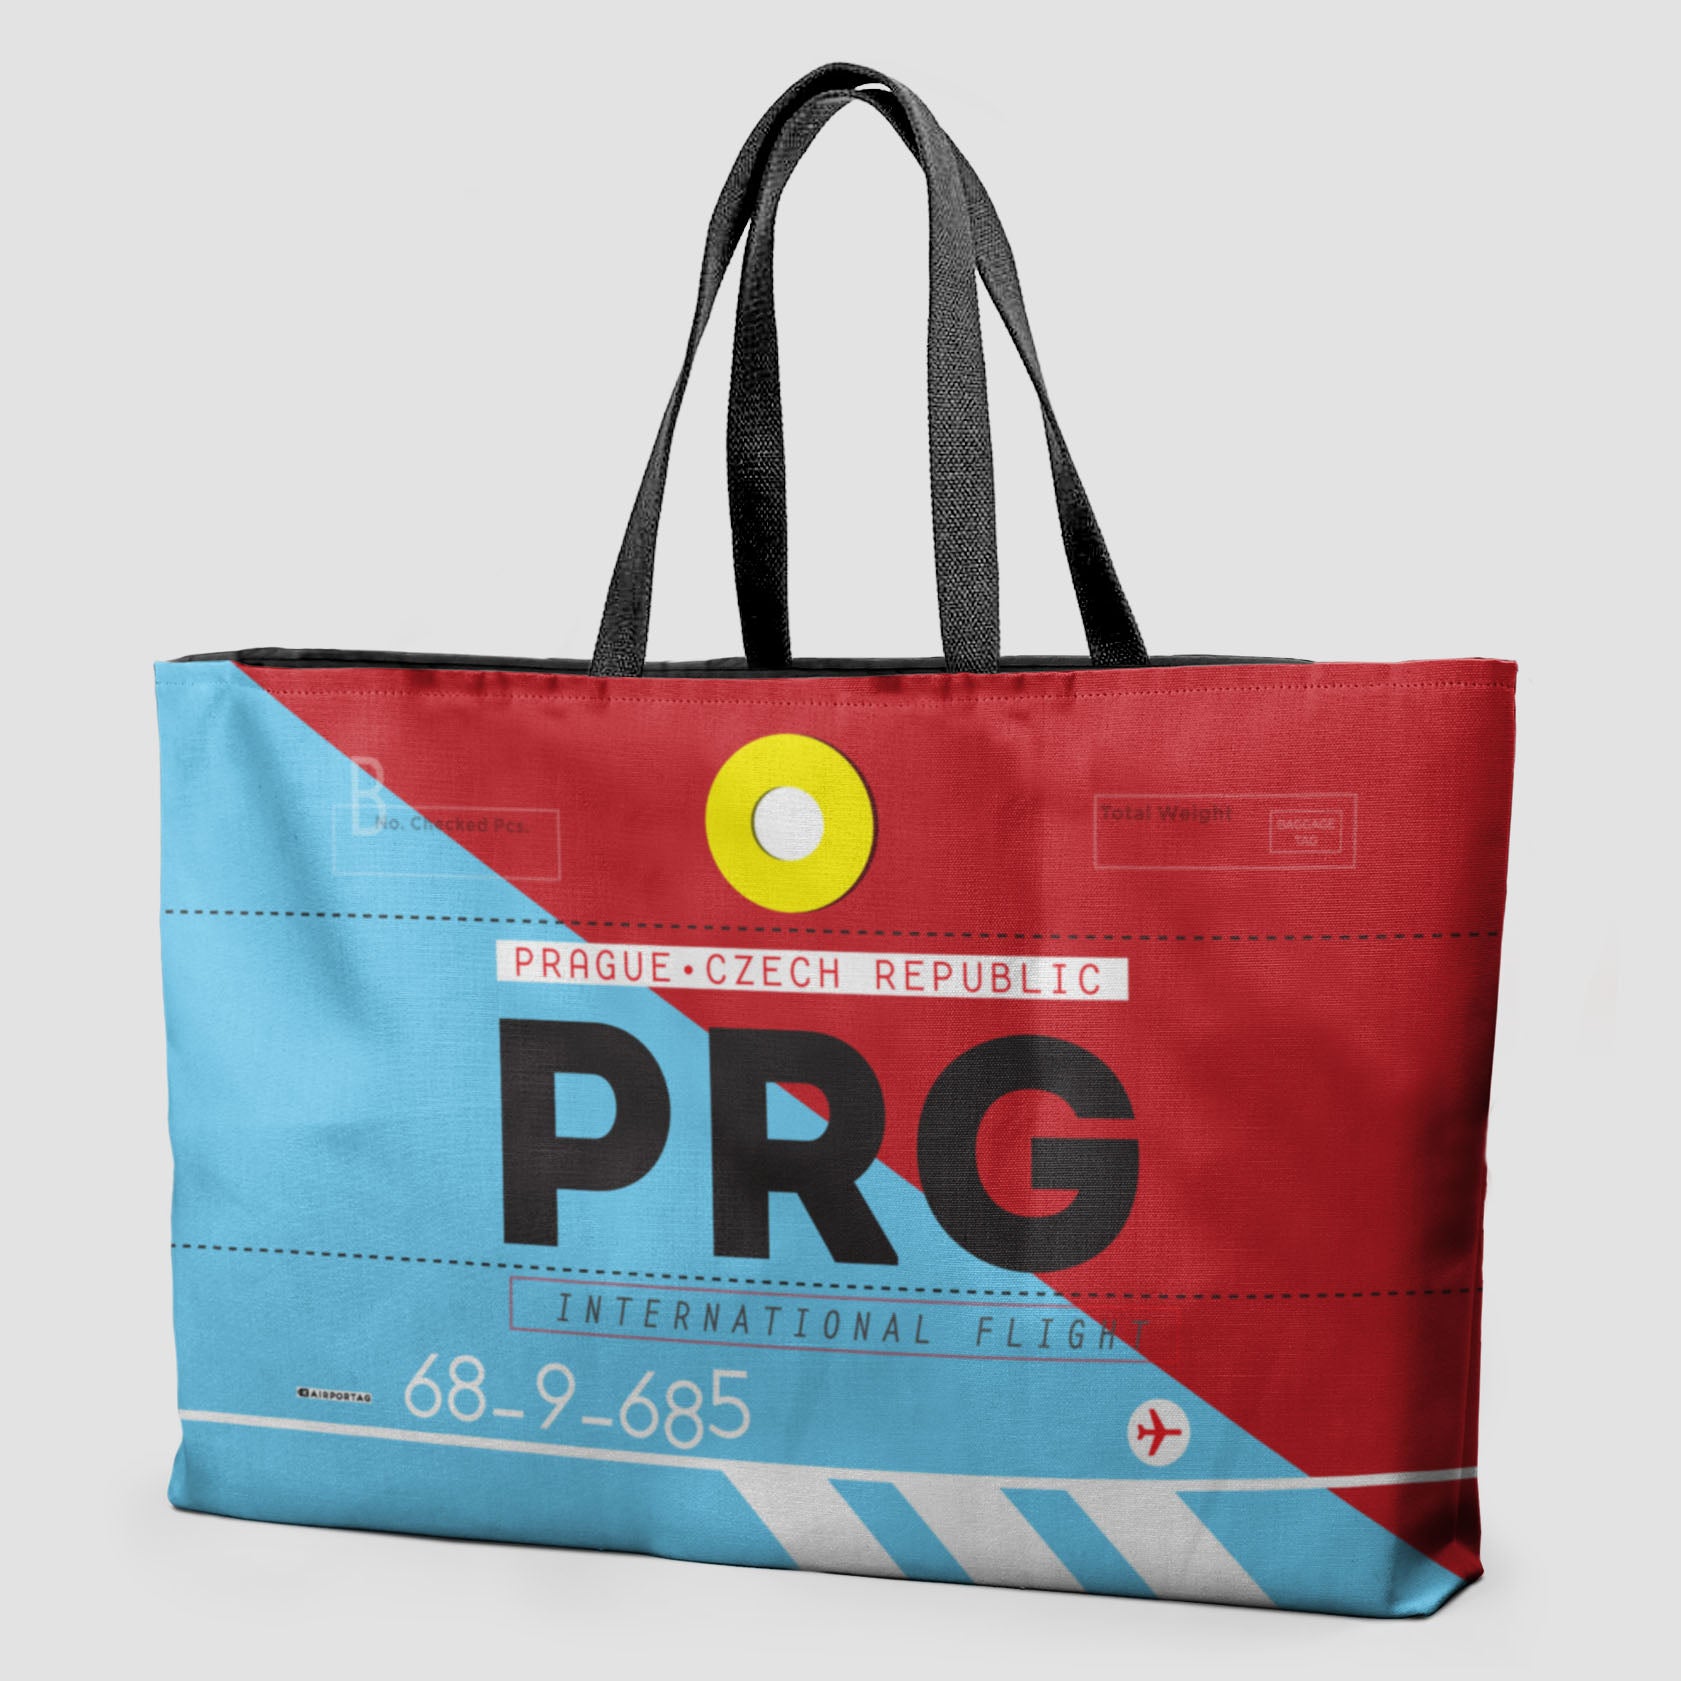 PRG - Weekender Bag - Airportag